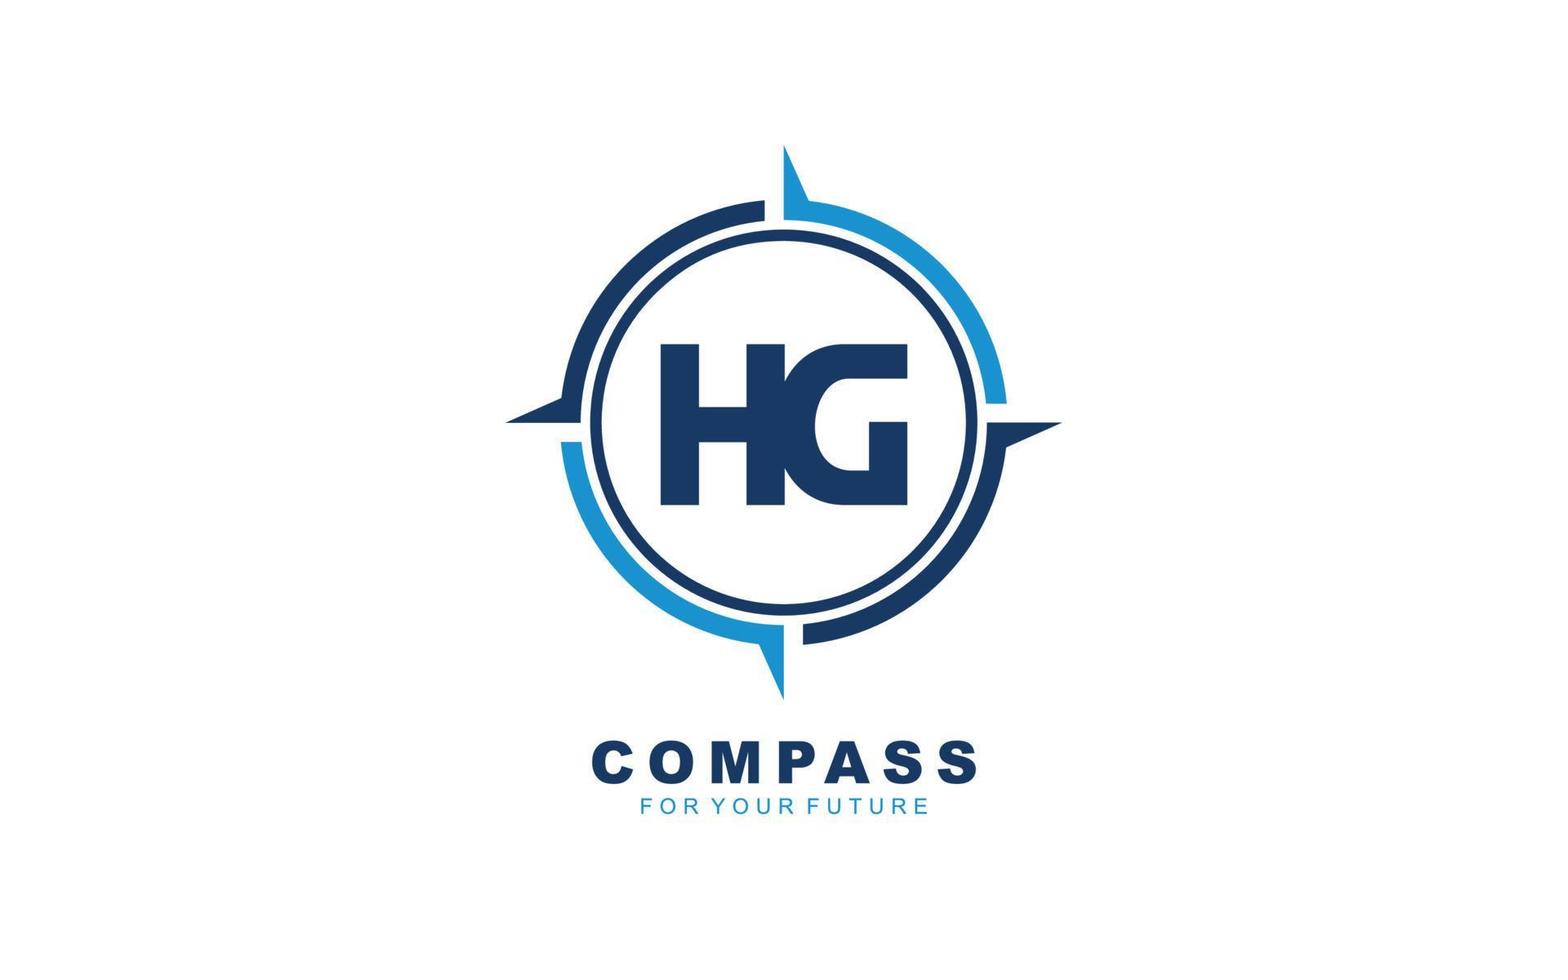 hg-Logo-Navigation für Markenunternehmen. Kompass-Vorlage, Vektorgrafik für Ihre Marke. vektor